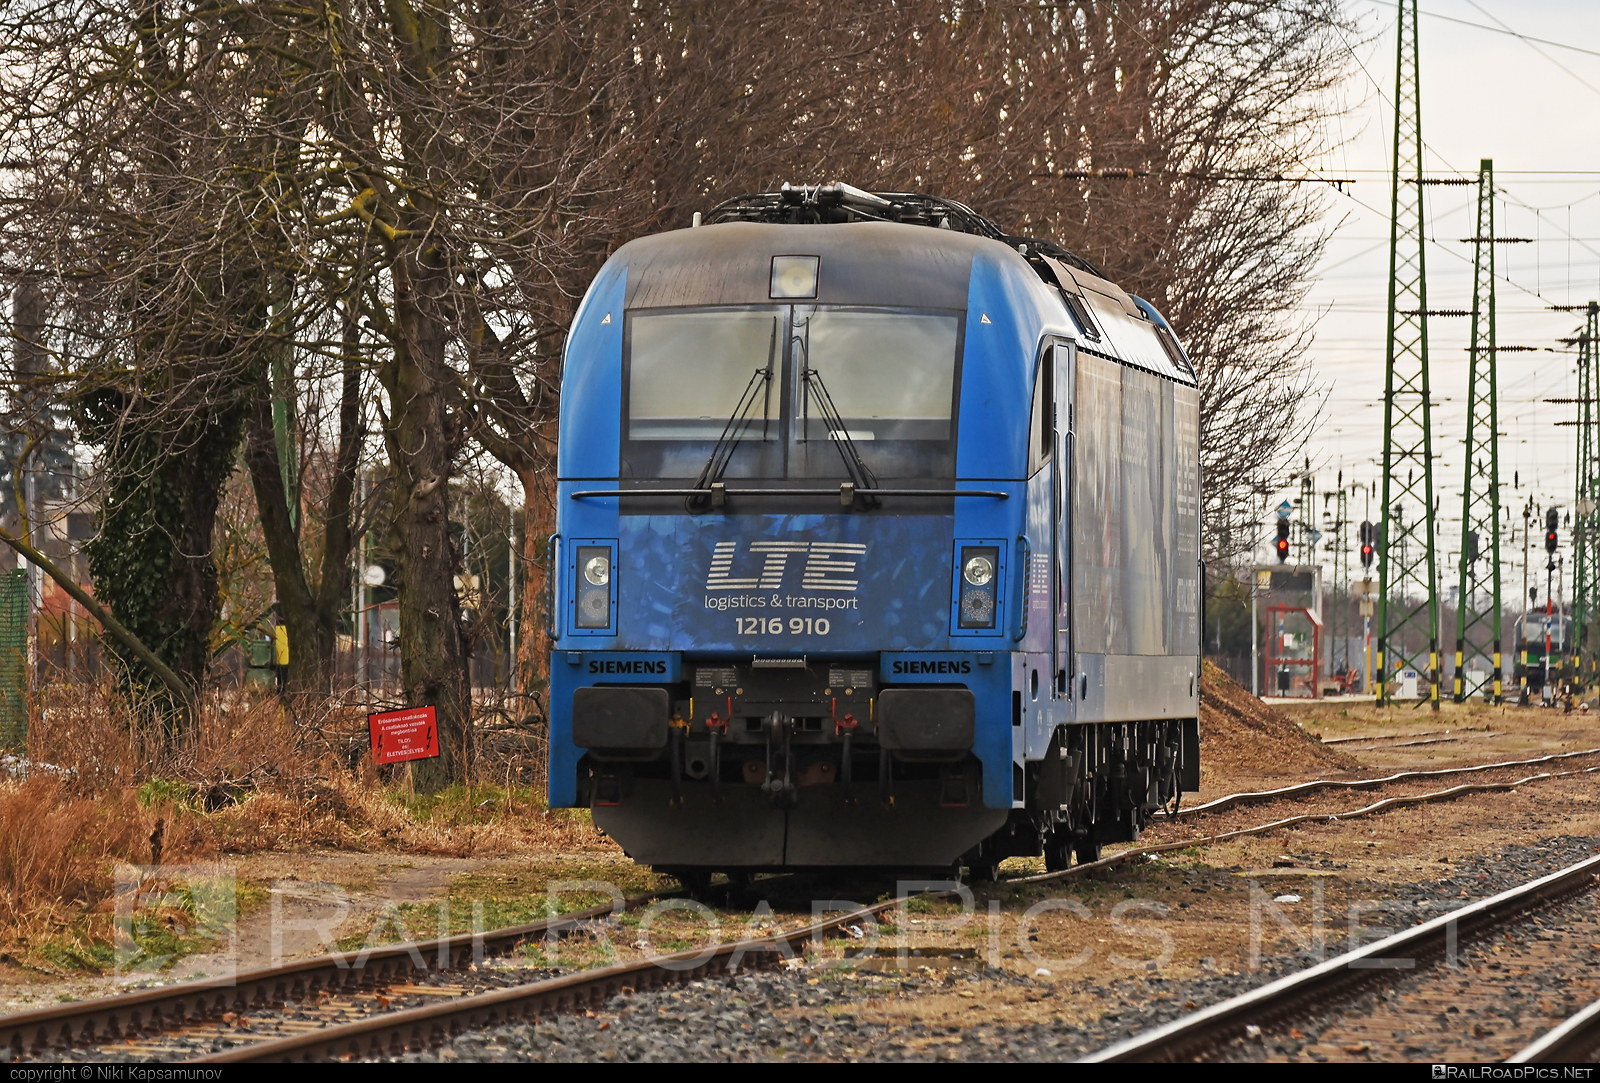 Siemens ES 64 U4 - 1216 910 operated by LTE Logistik und Transport GmbH #es64 #es64u4 #eurosprinter #lte #ltelogistikundtransport #ltelogistikundtransportgmbh #siemens #siemensEs64 #siemensEs64u4 #siemenstaurus #taurus #tauruslocomotive